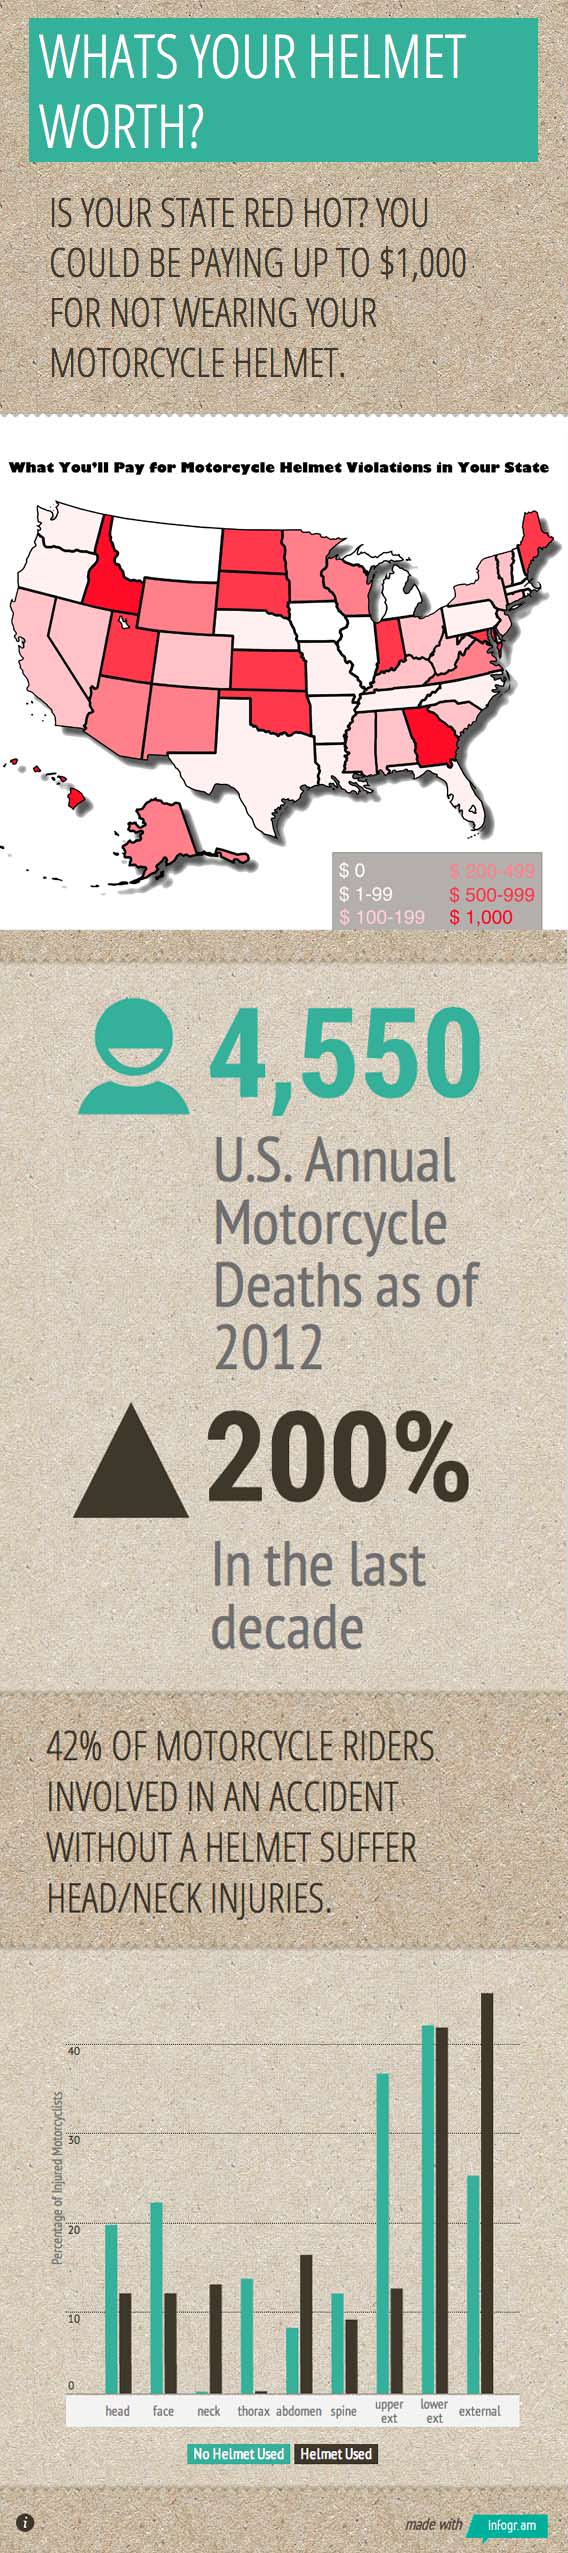 Motorcycle Helmet Laws